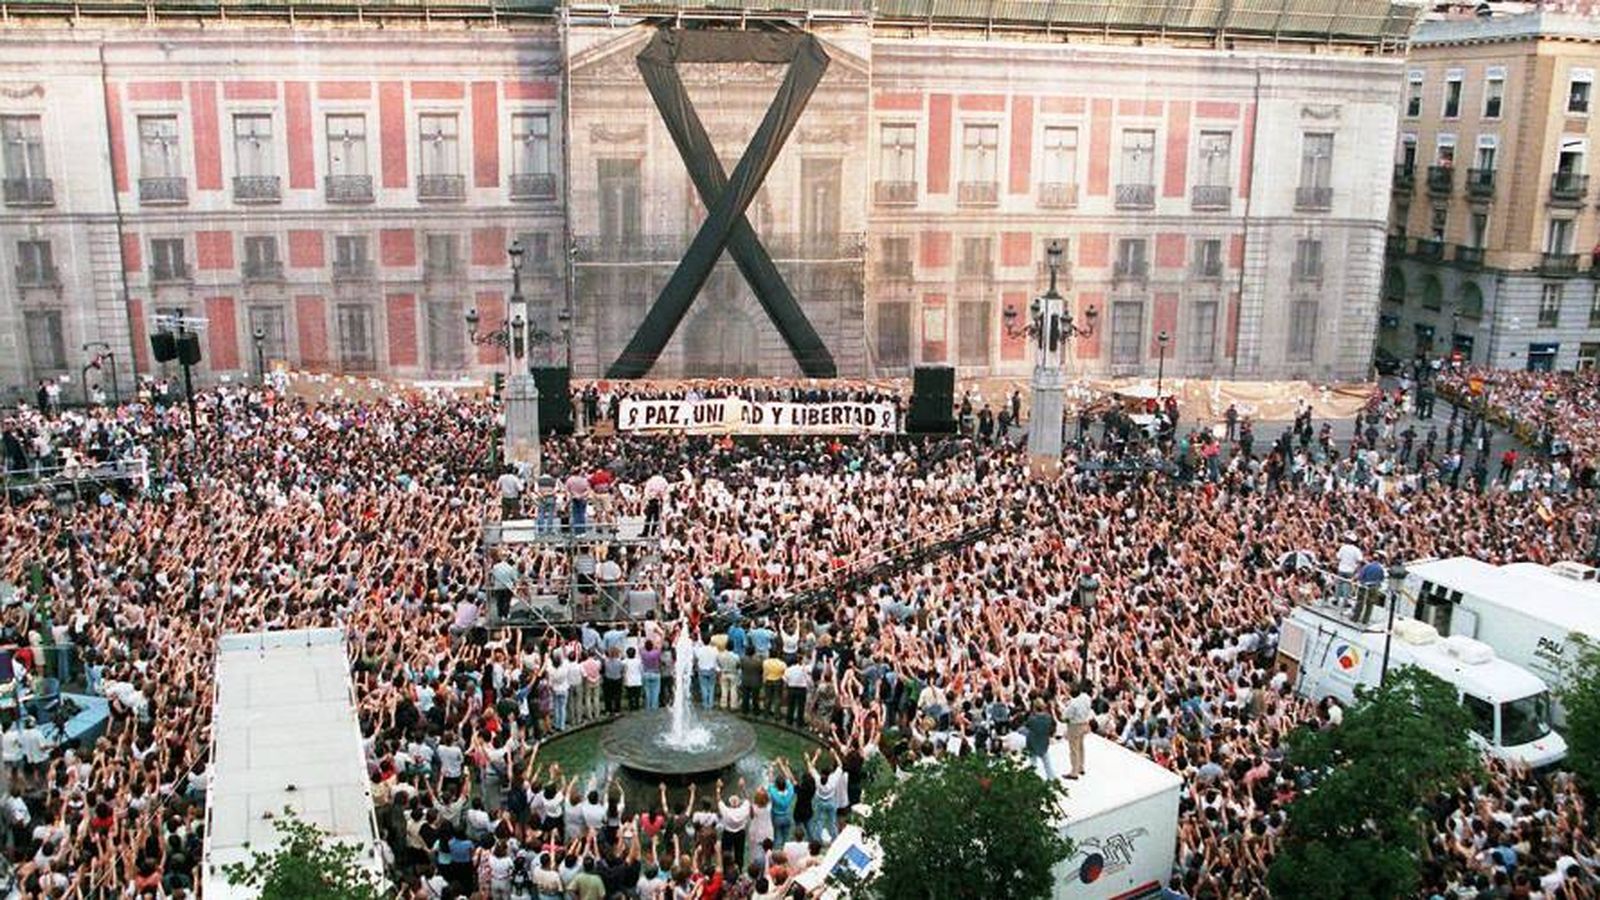 Foto: Imagen de la manifestación en Madrid en repulsa del asesinato de Blanco en 1997. (Fundación Miguel Ángel Blanco)